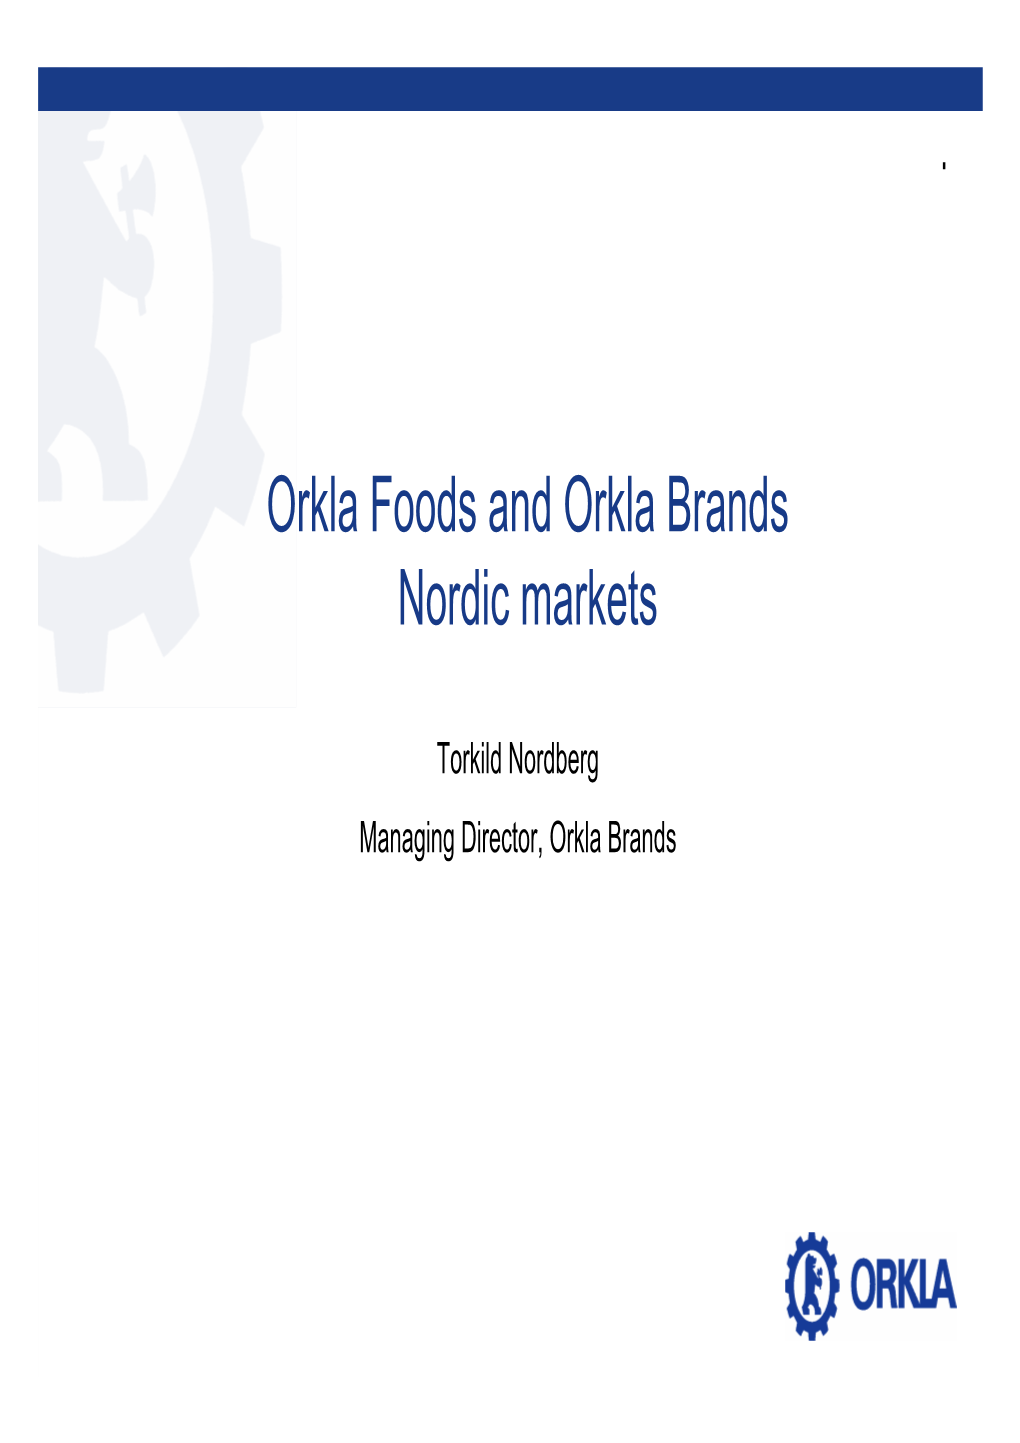 Orkla Foods and Orkla Brands Nordic Markets